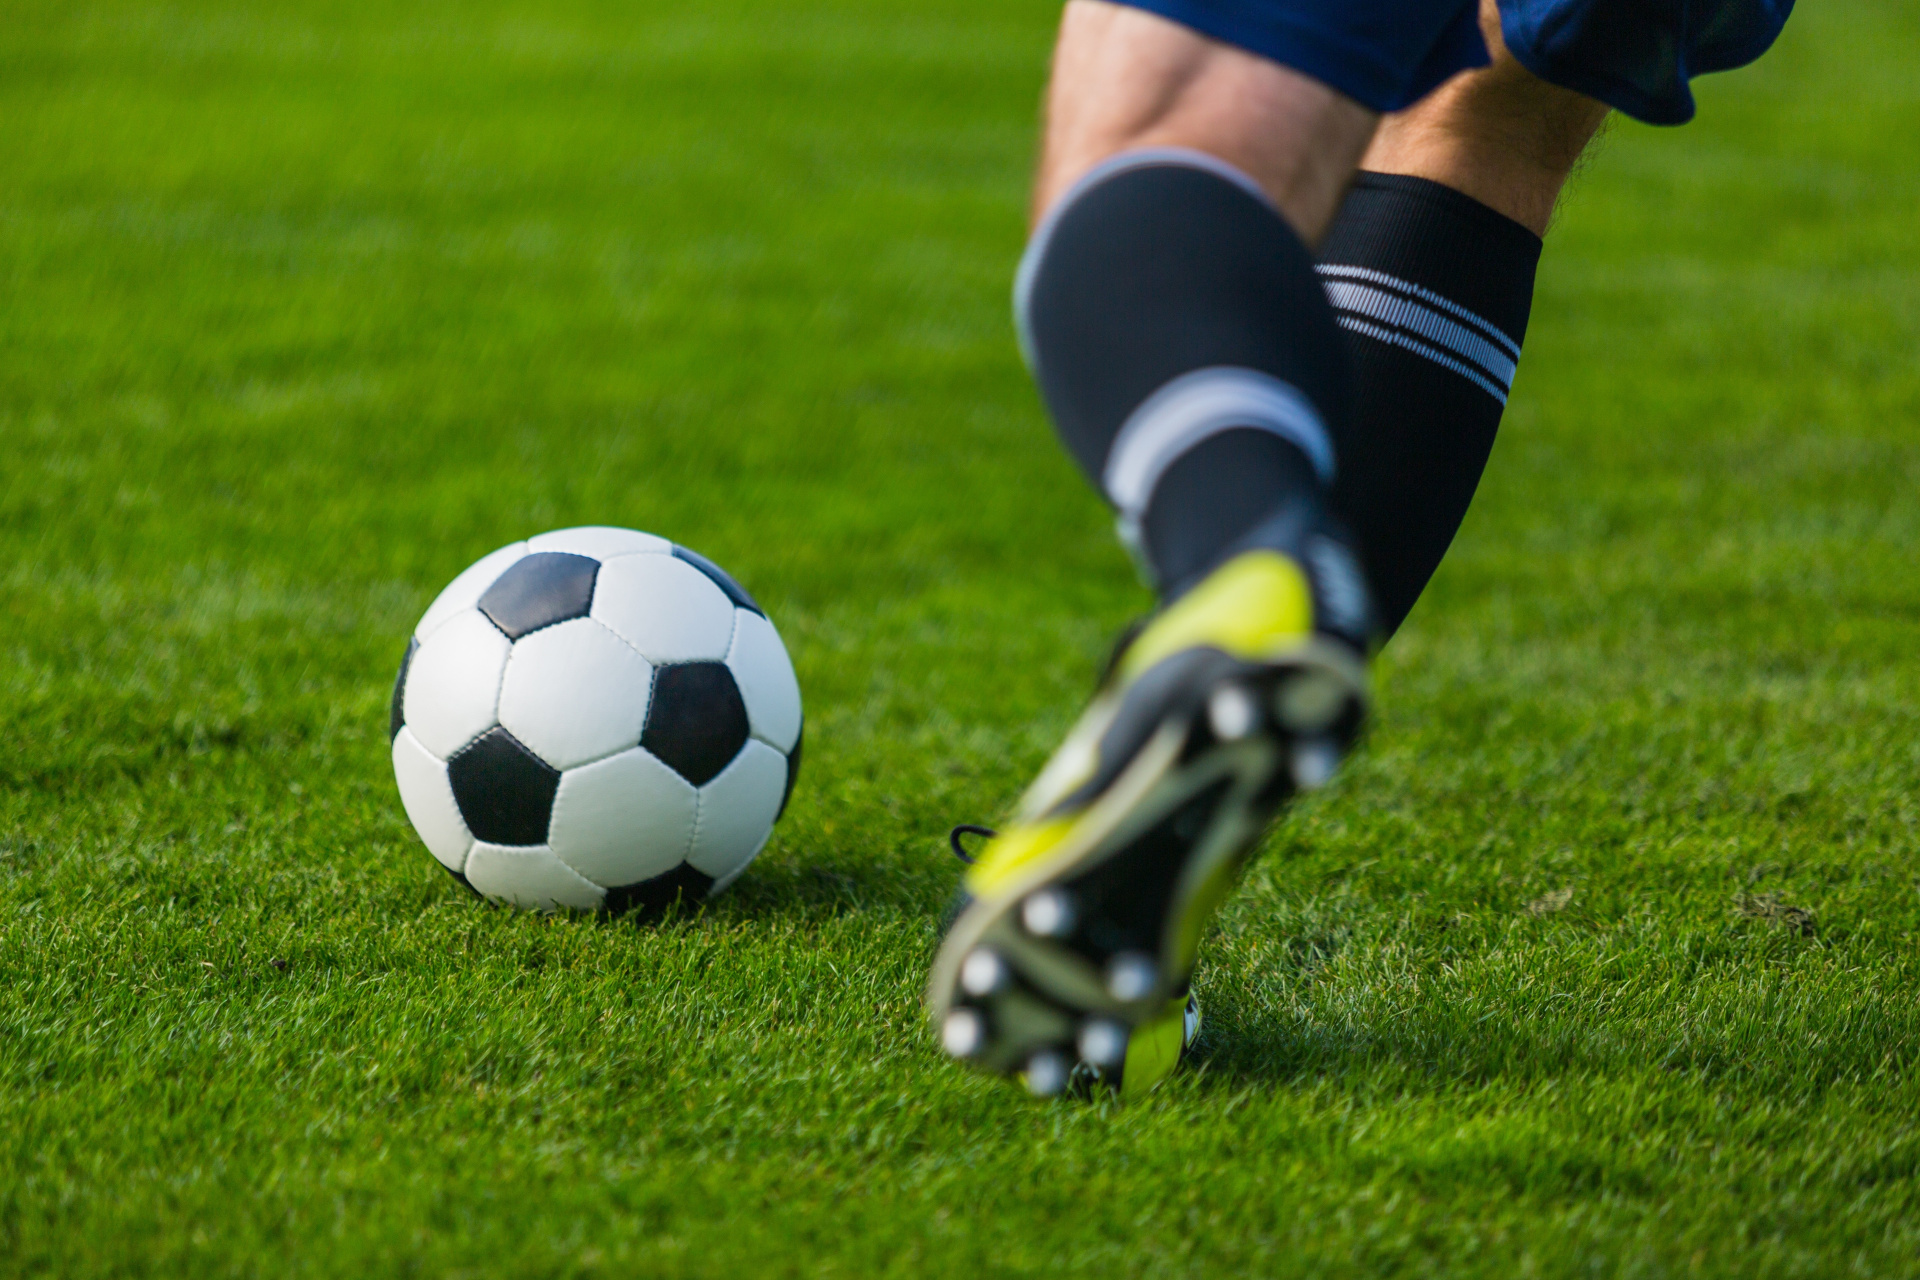 Ein Fuß, der gegen einen Fußball tritt 
© BillionPhotos.com - stock.adob